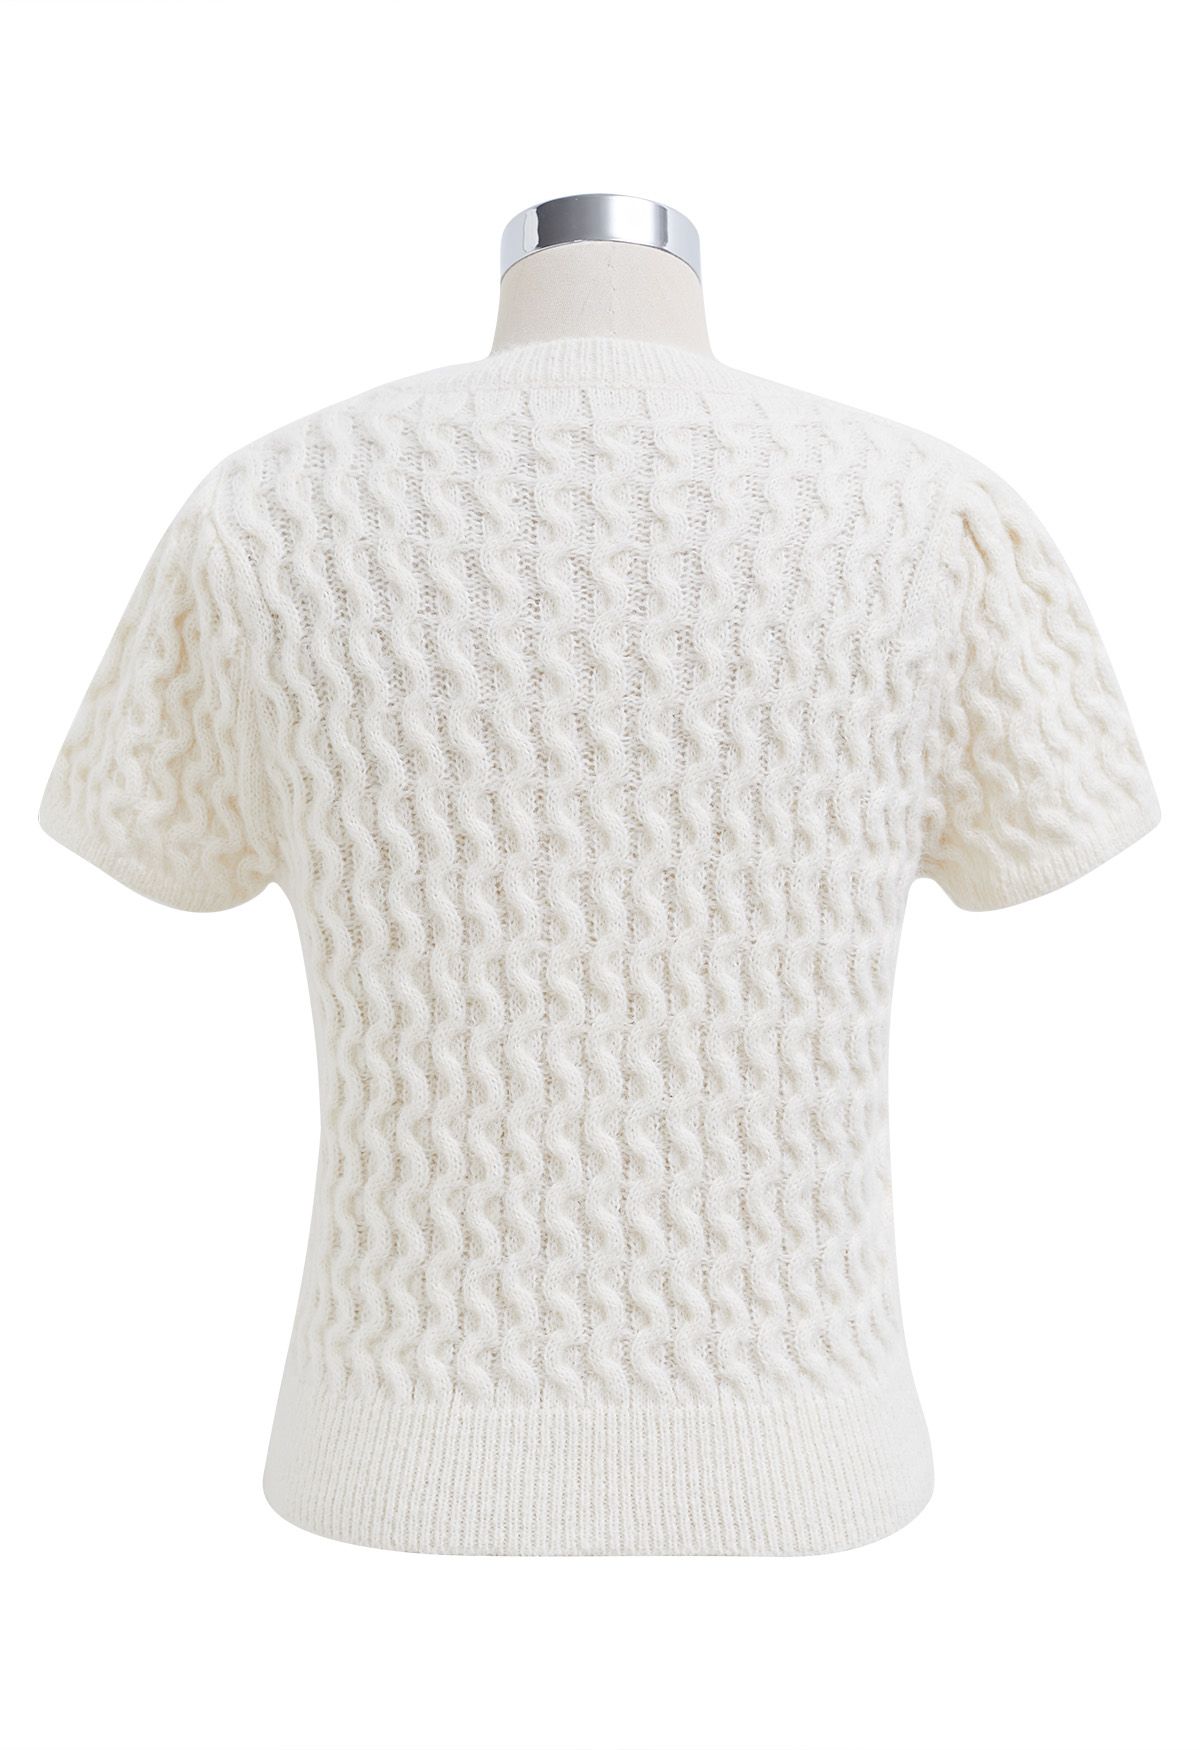 Attachant - Haut en tricot à manches courtes orné de nœud papillon en blanc